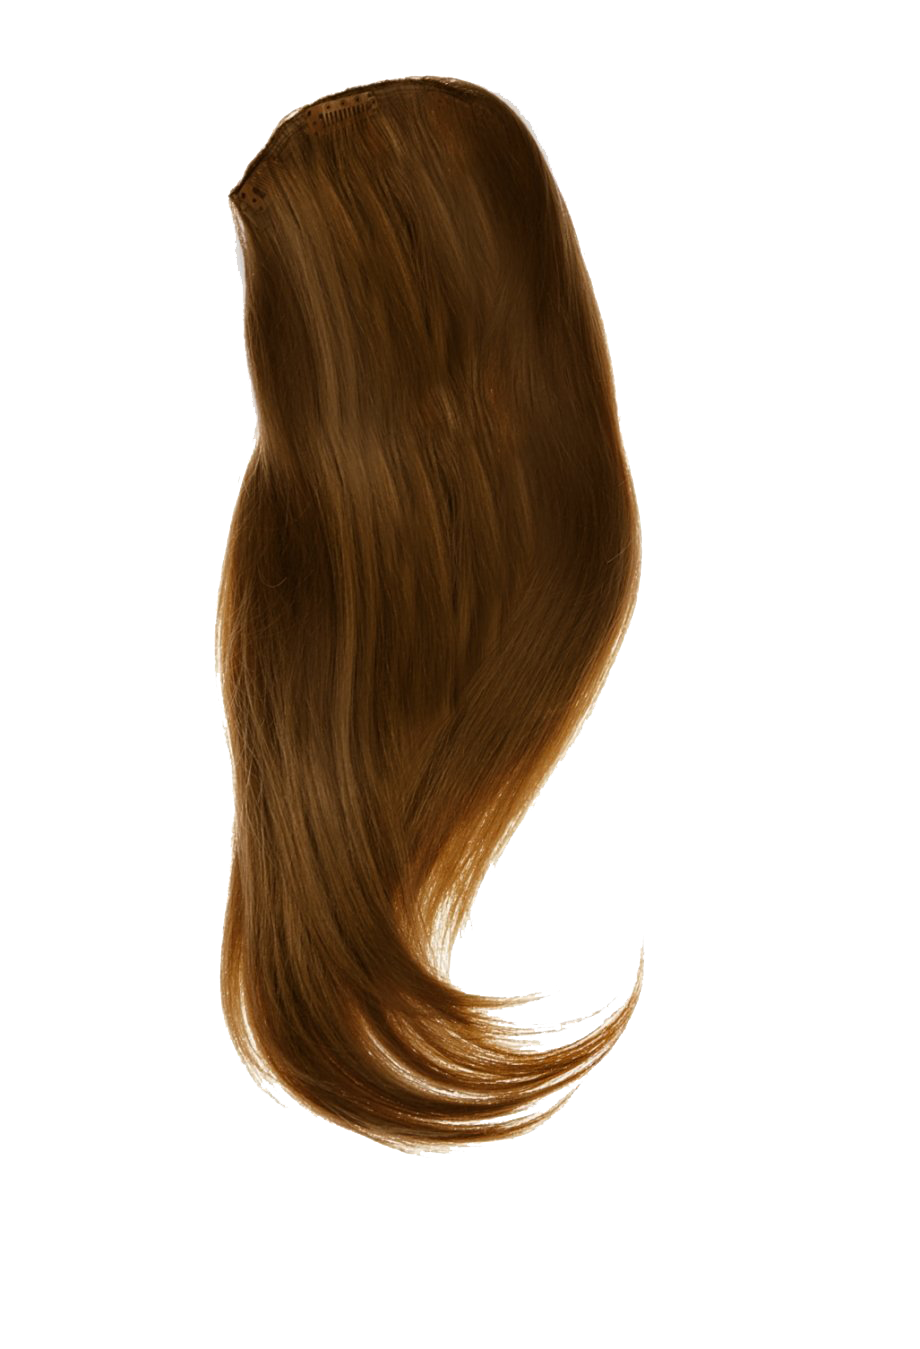 Brown Women Hair PNG Free Image